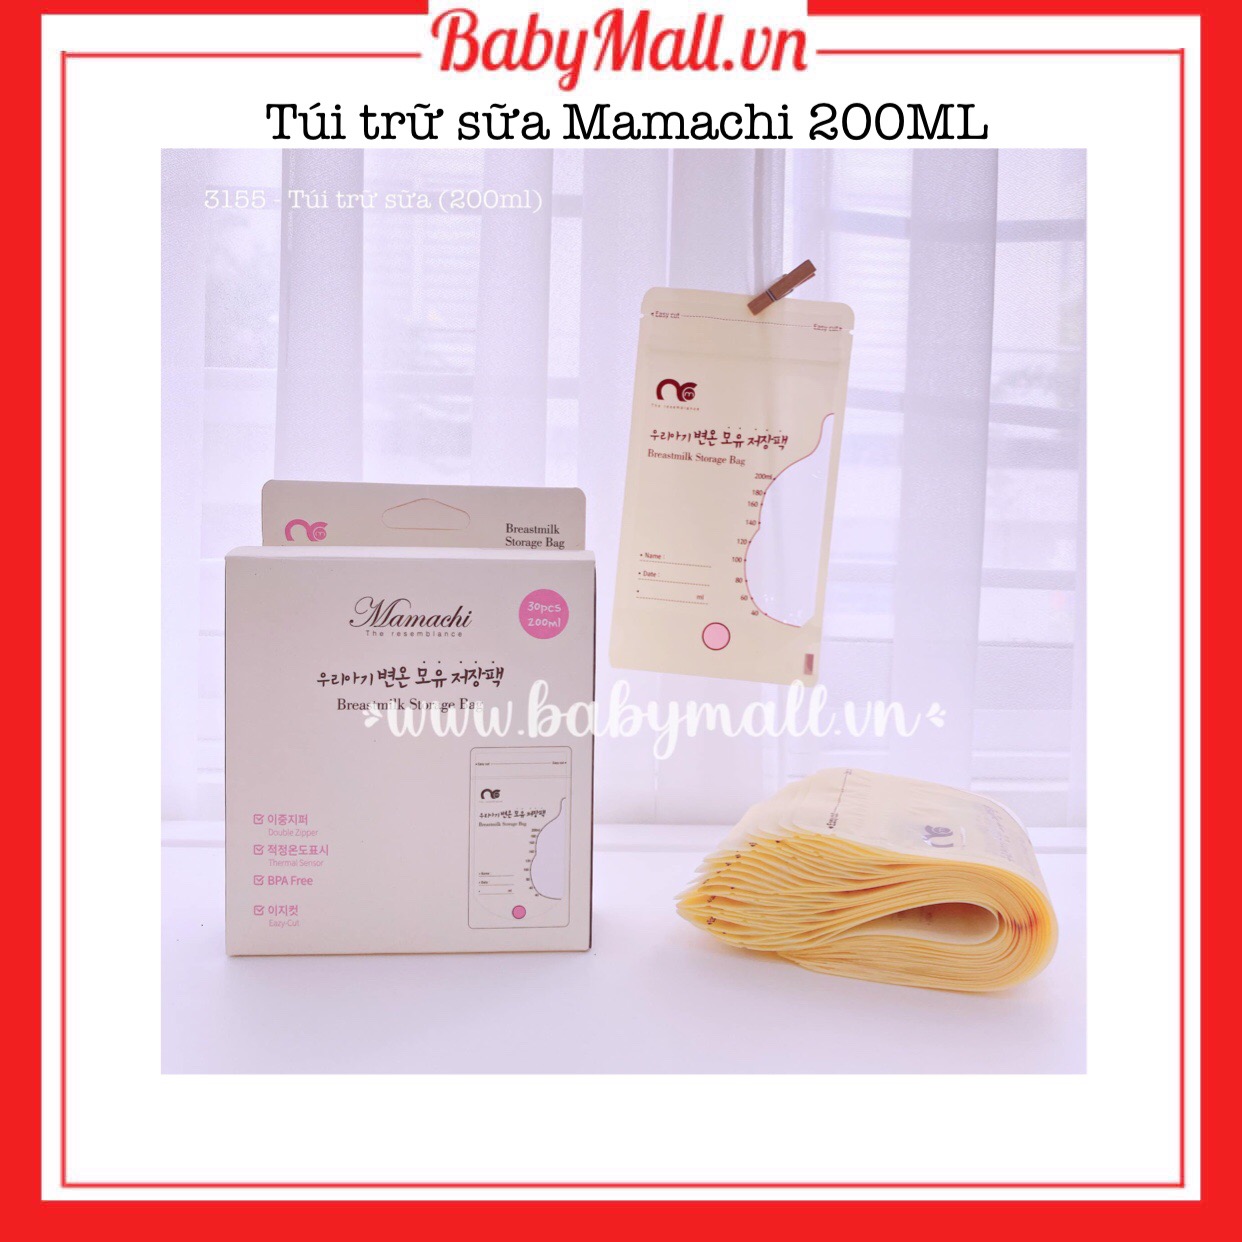 Túi trữ sữa Mamachi 200ML Hàn Quốc Babymall.vn